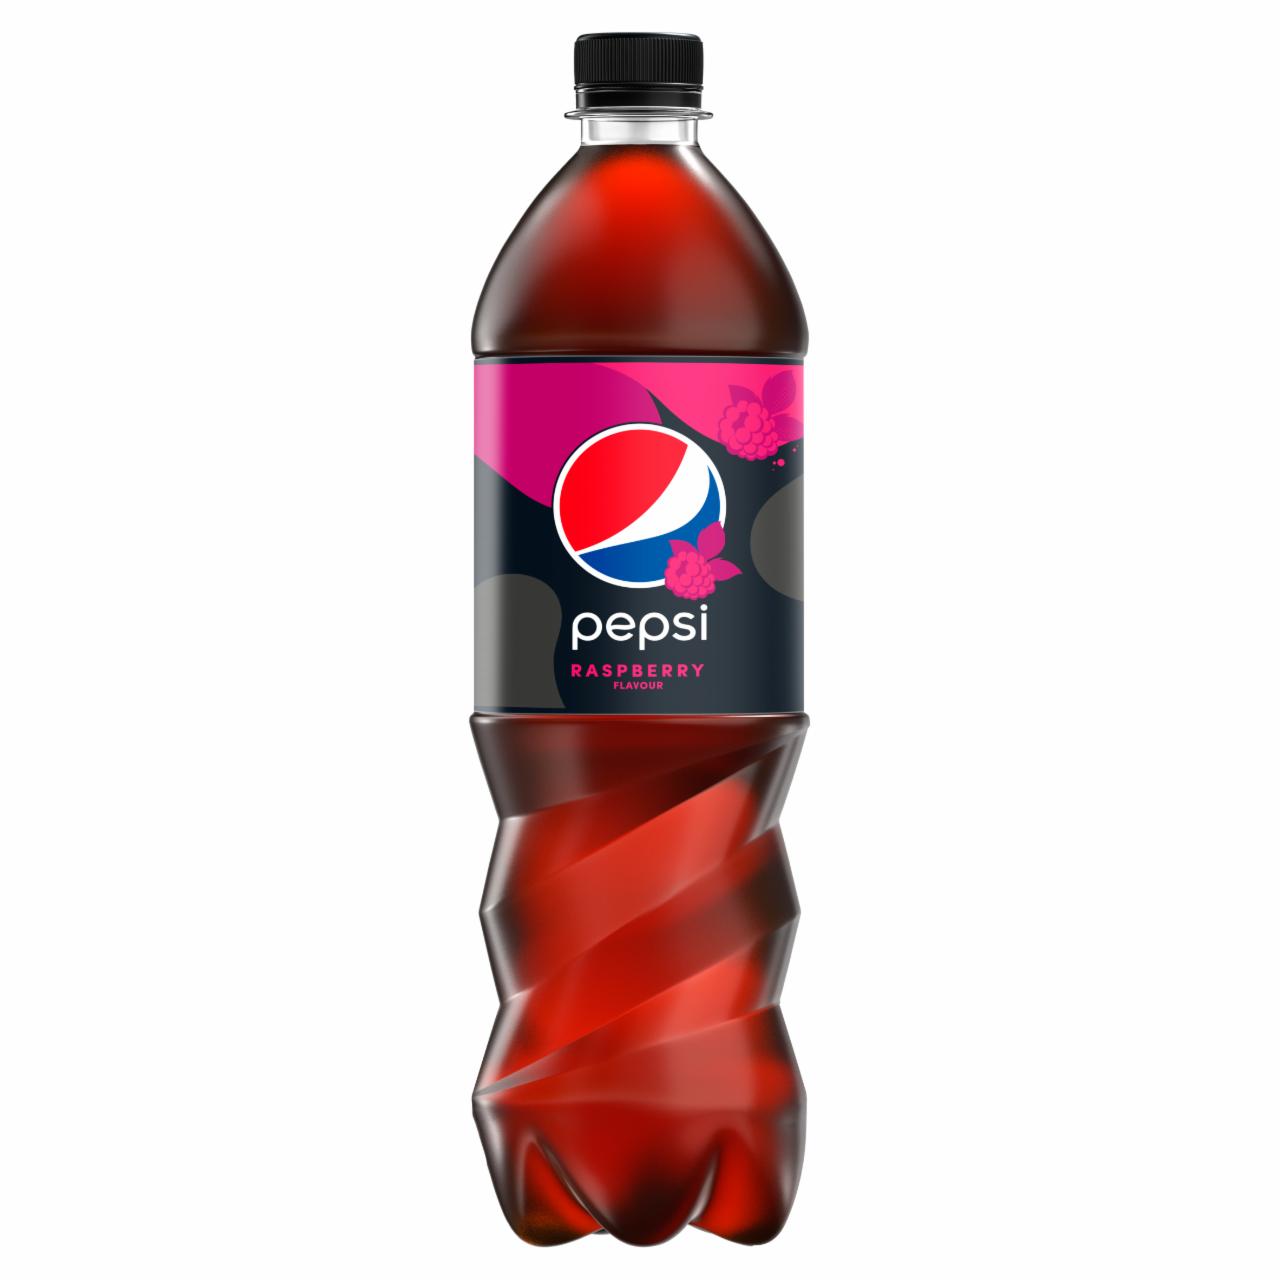 Zdjęcia - Pepsi Raspberry Napój gazowany 0,85 l